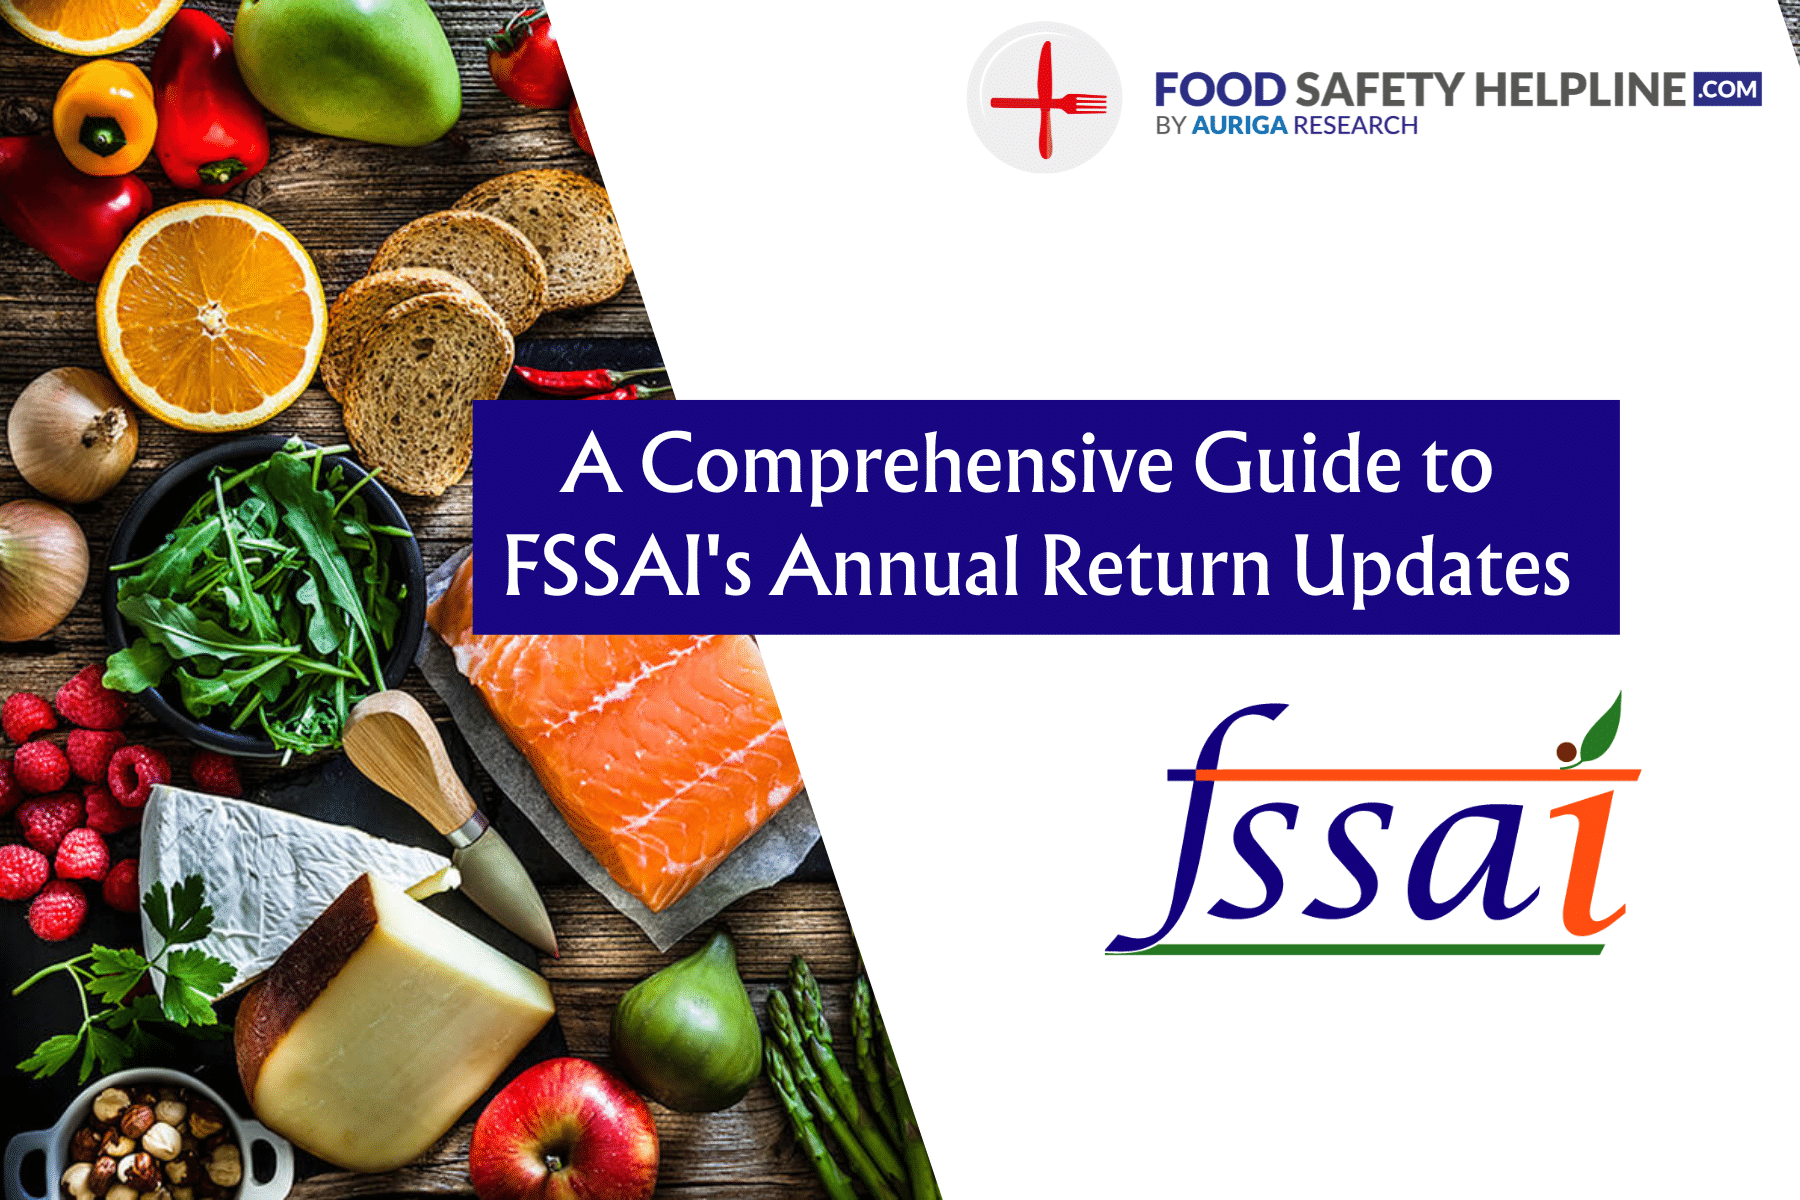 A Comprehensive Guide to FSSAI’s Annual Return Updates